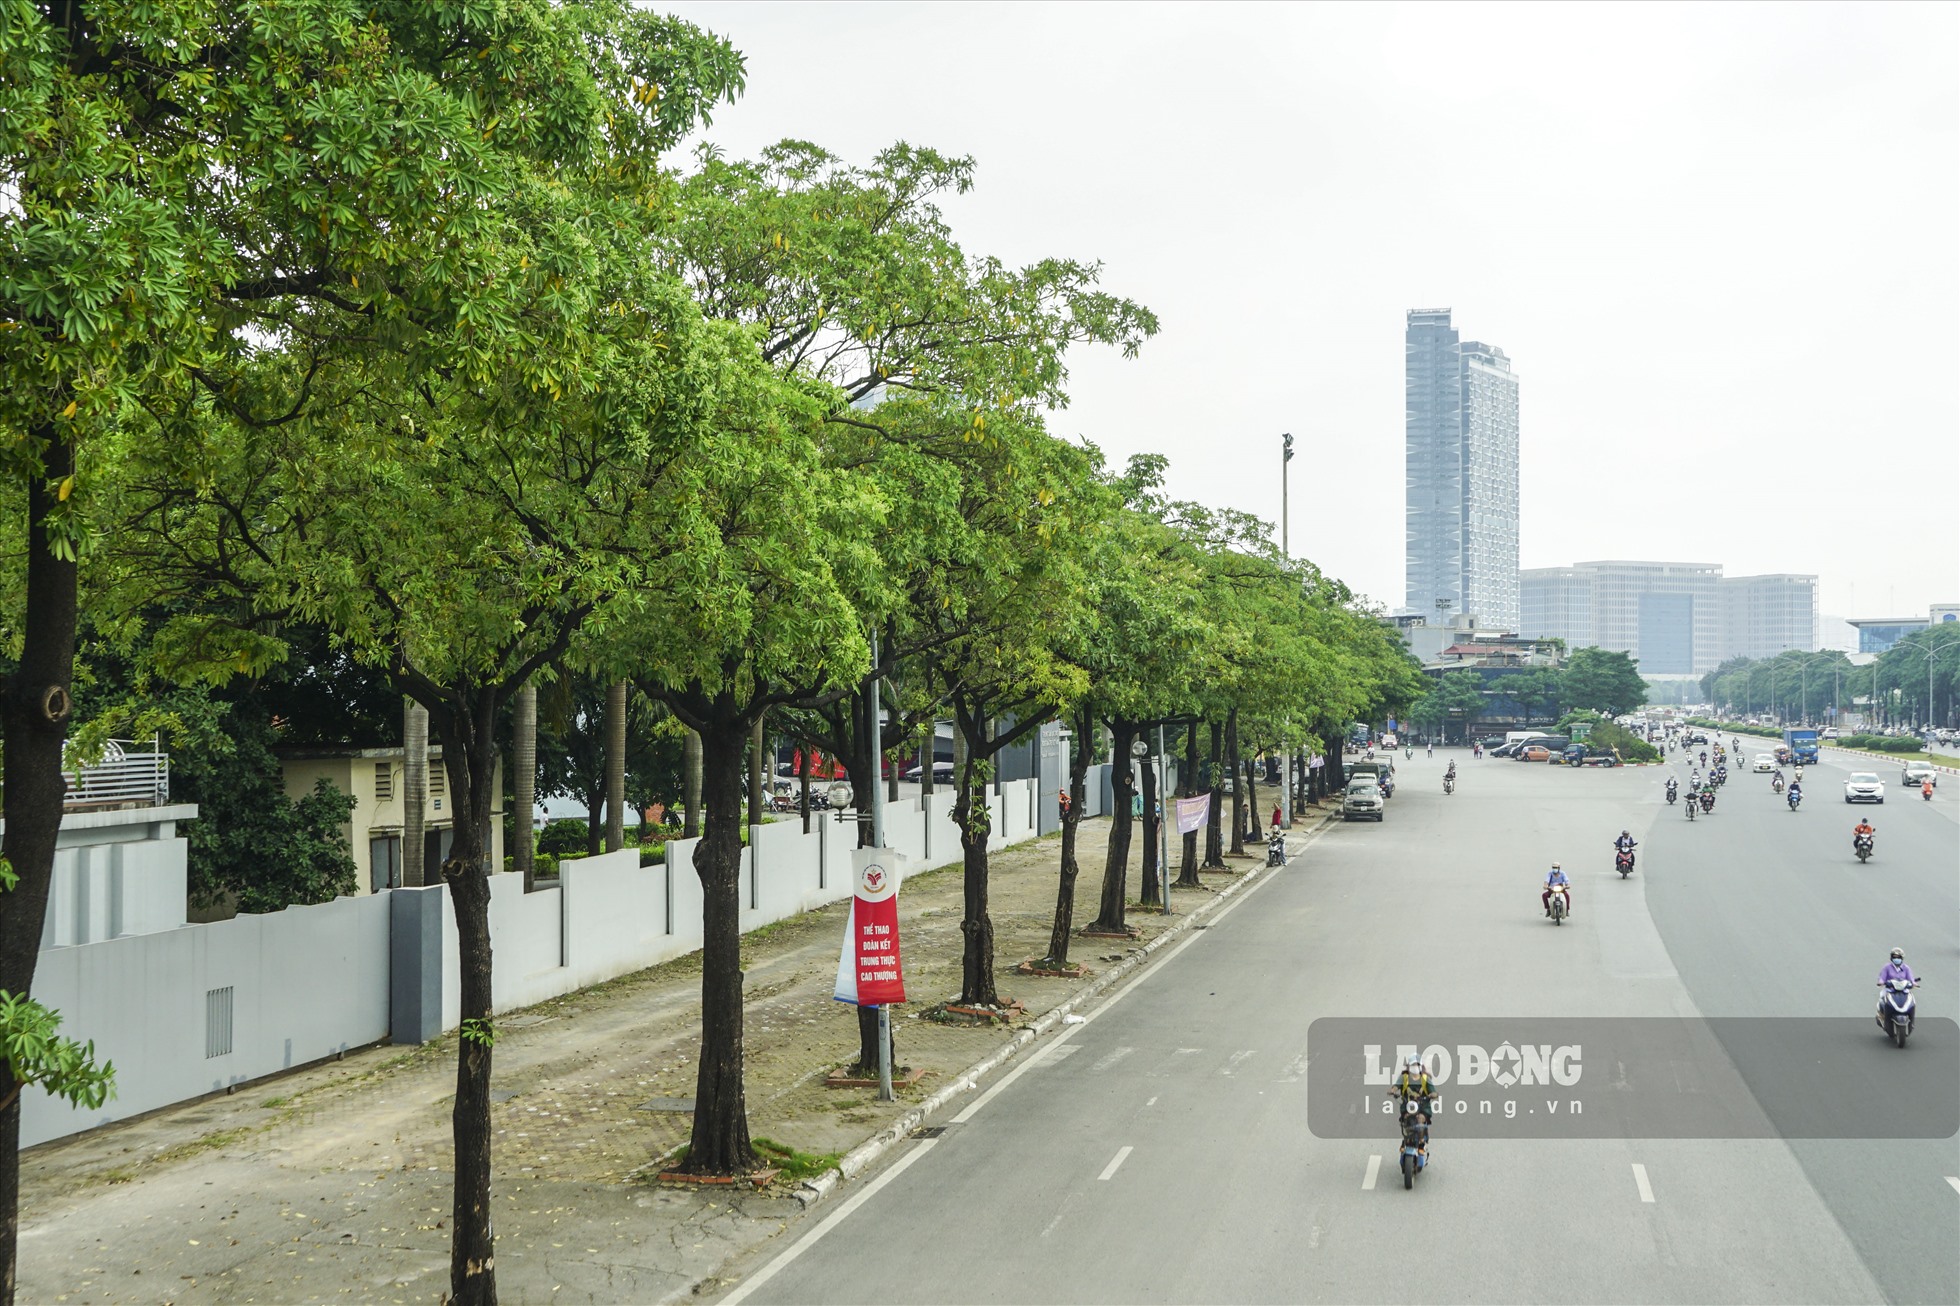 Tương tự trên đường Lê Quang Đạo, hàng cây hoa sữa nối dài tăm tắp. Người dân dừng chân chụp ảnh kỉ niệm.